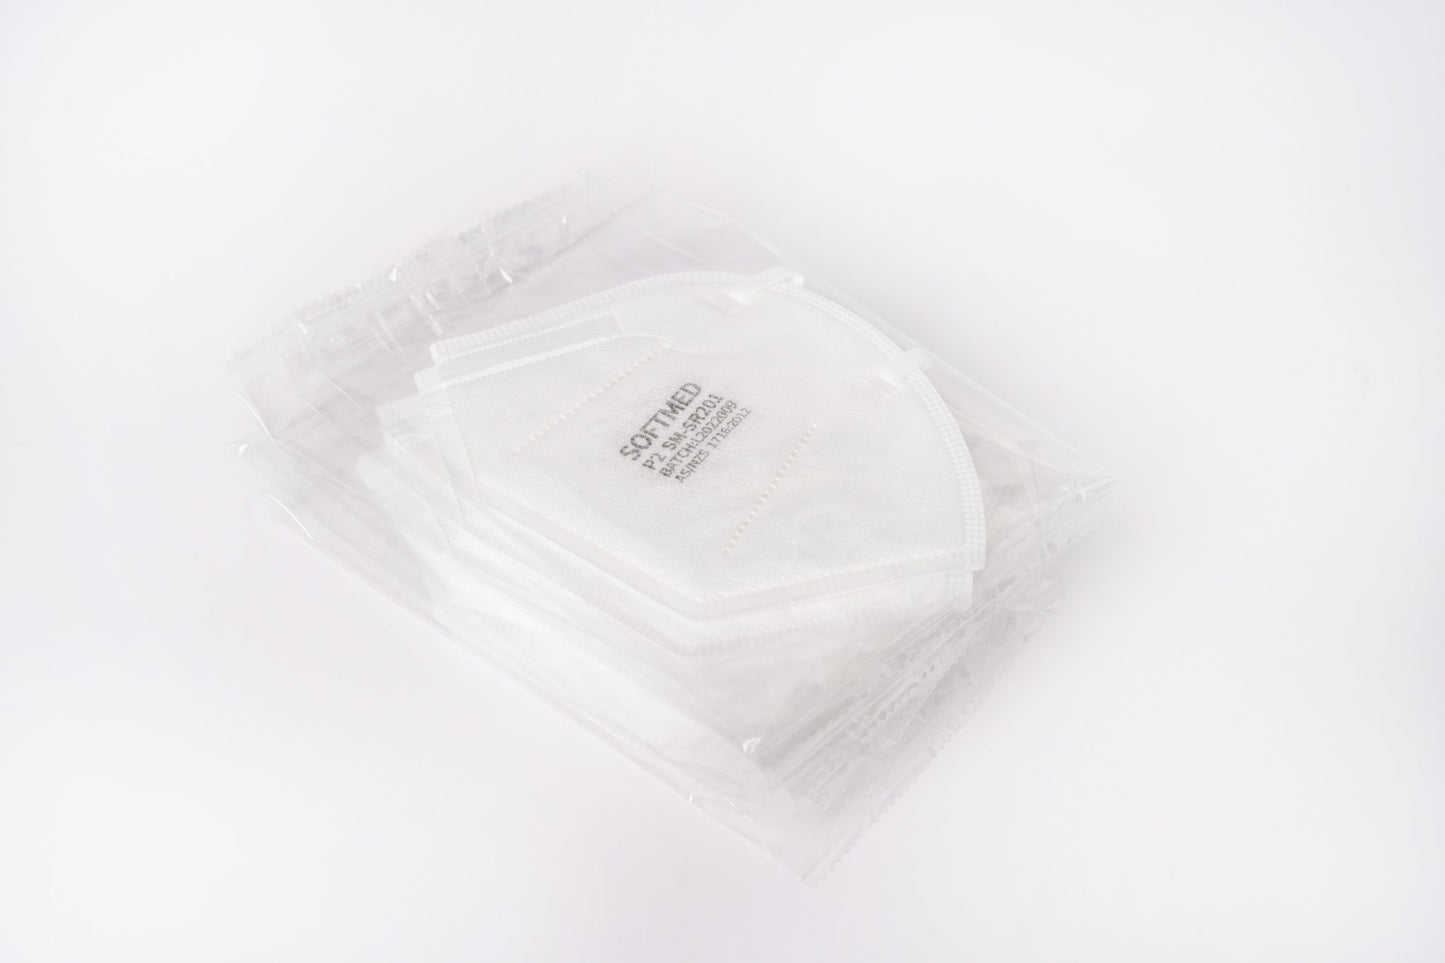 Softmed N95 Respirator White 10 pack N95 Masks